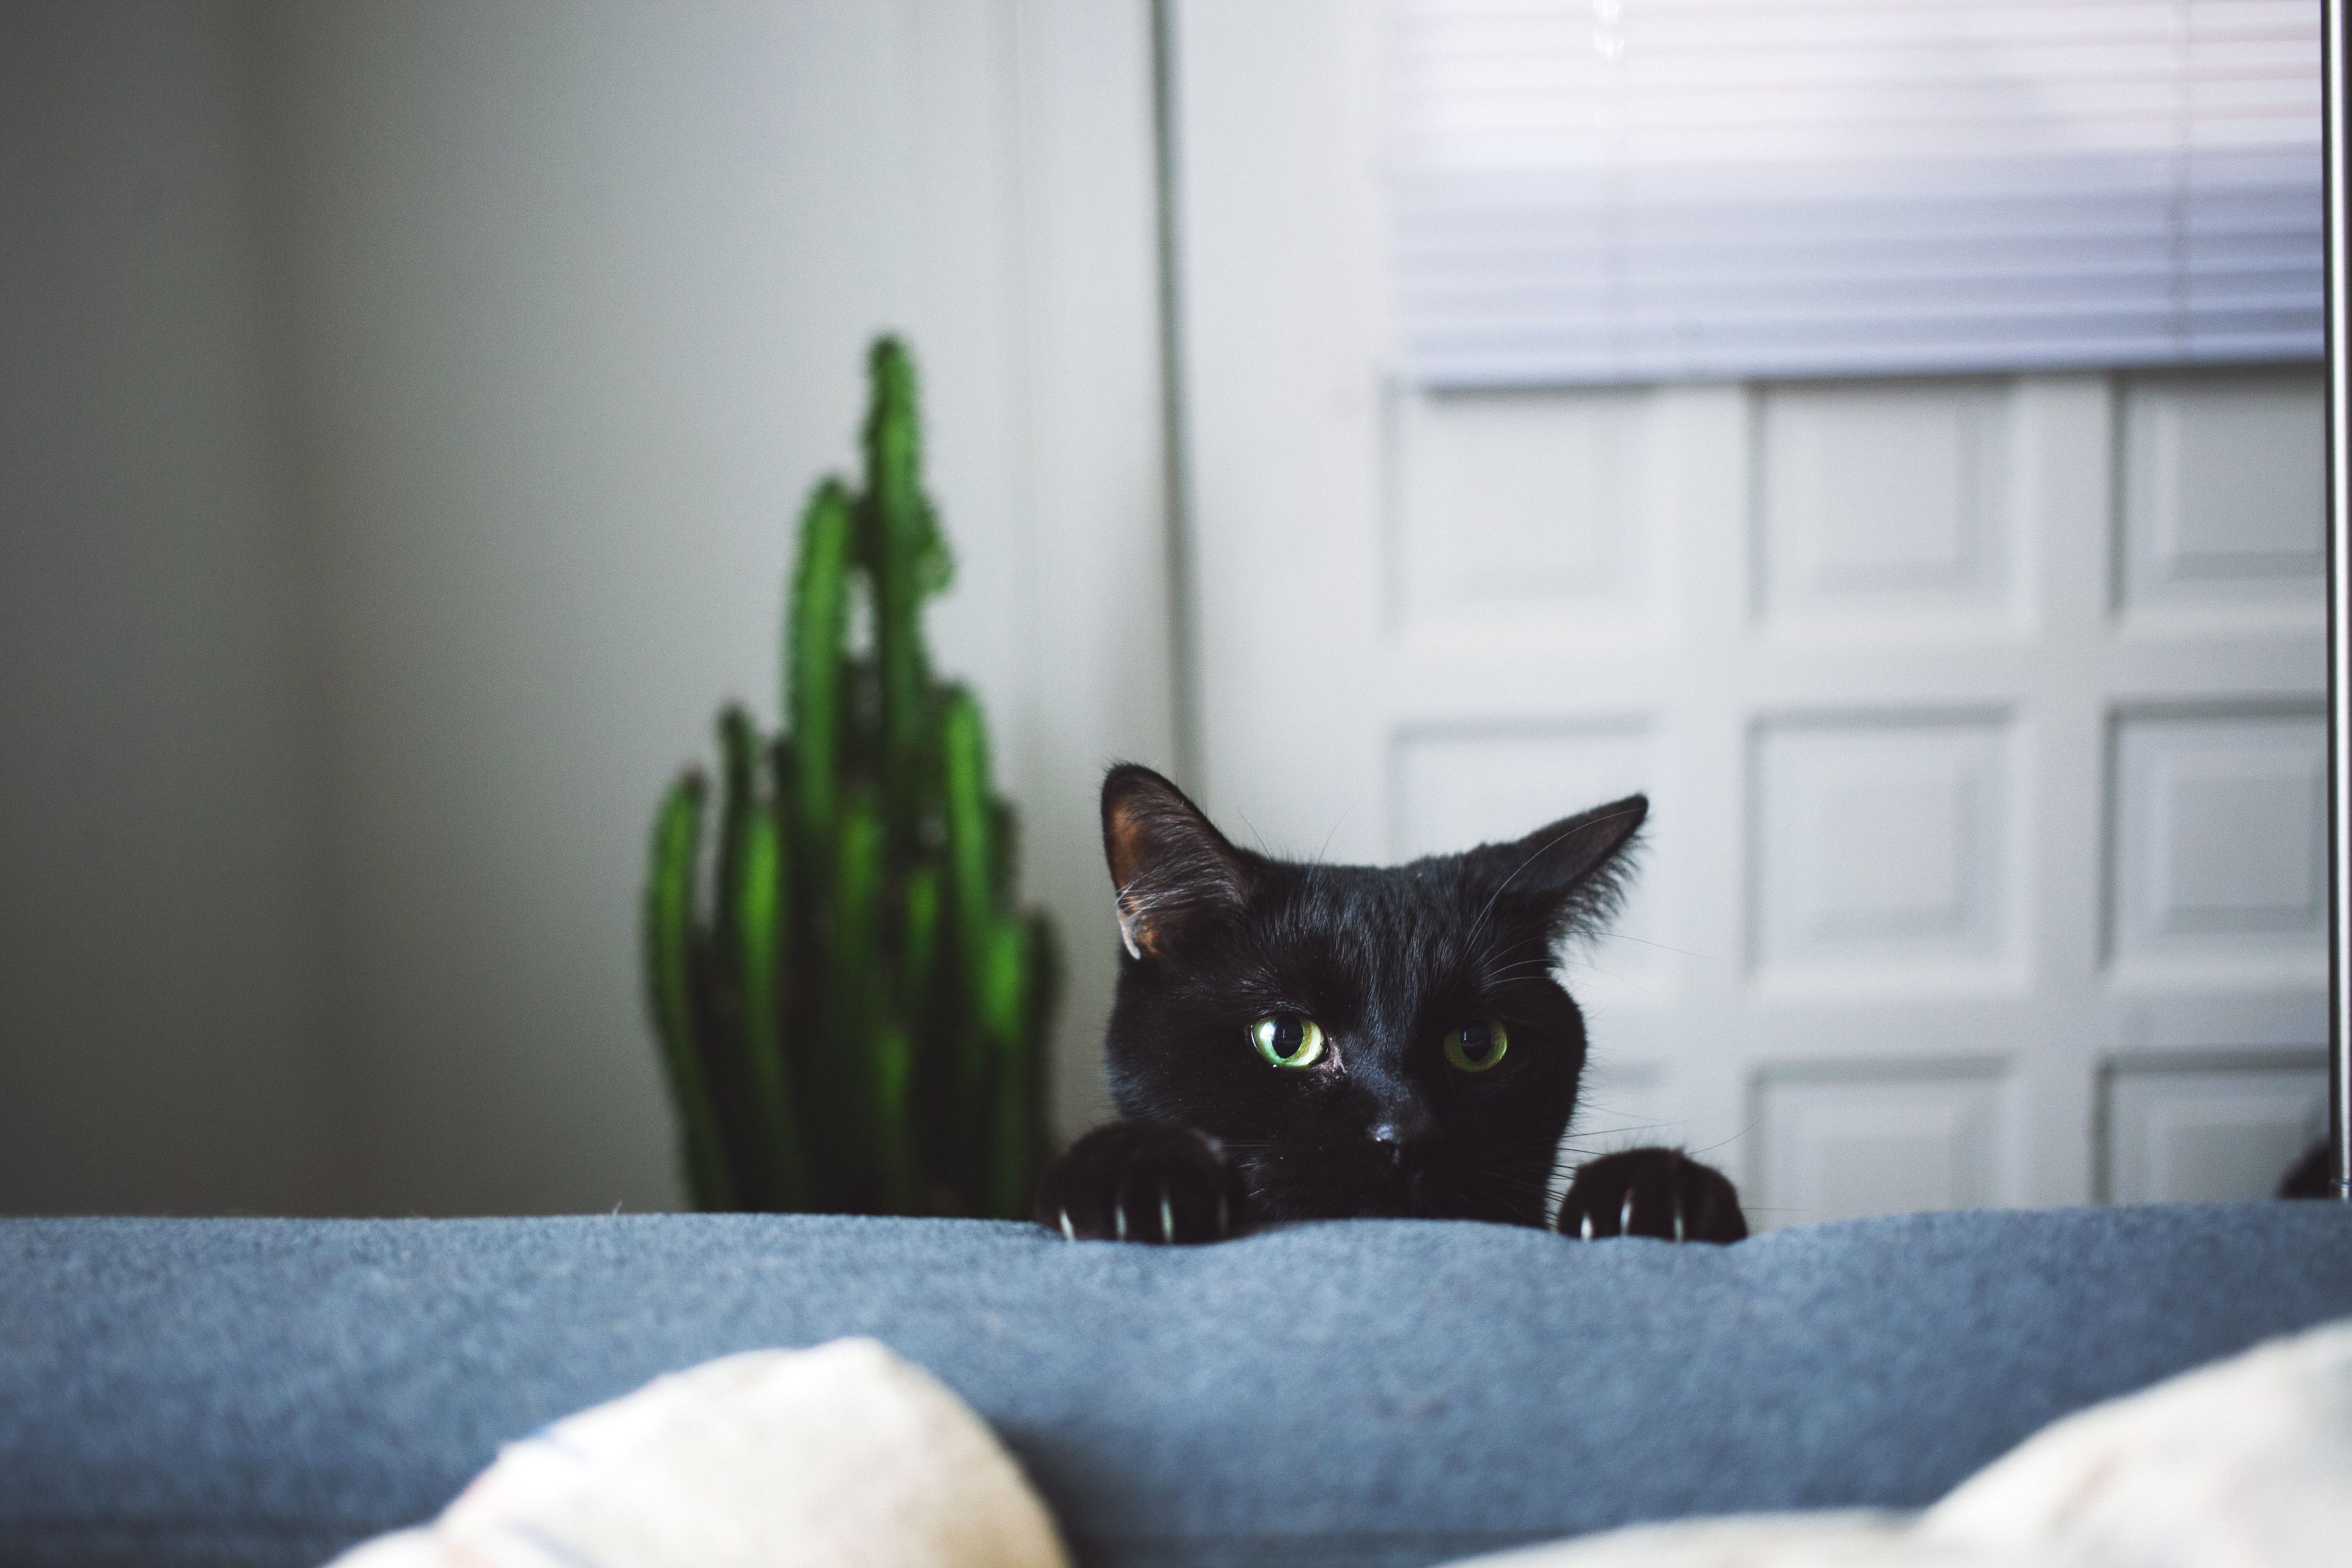 20 Best Black Cat Names Male And Female Black Kitten Names